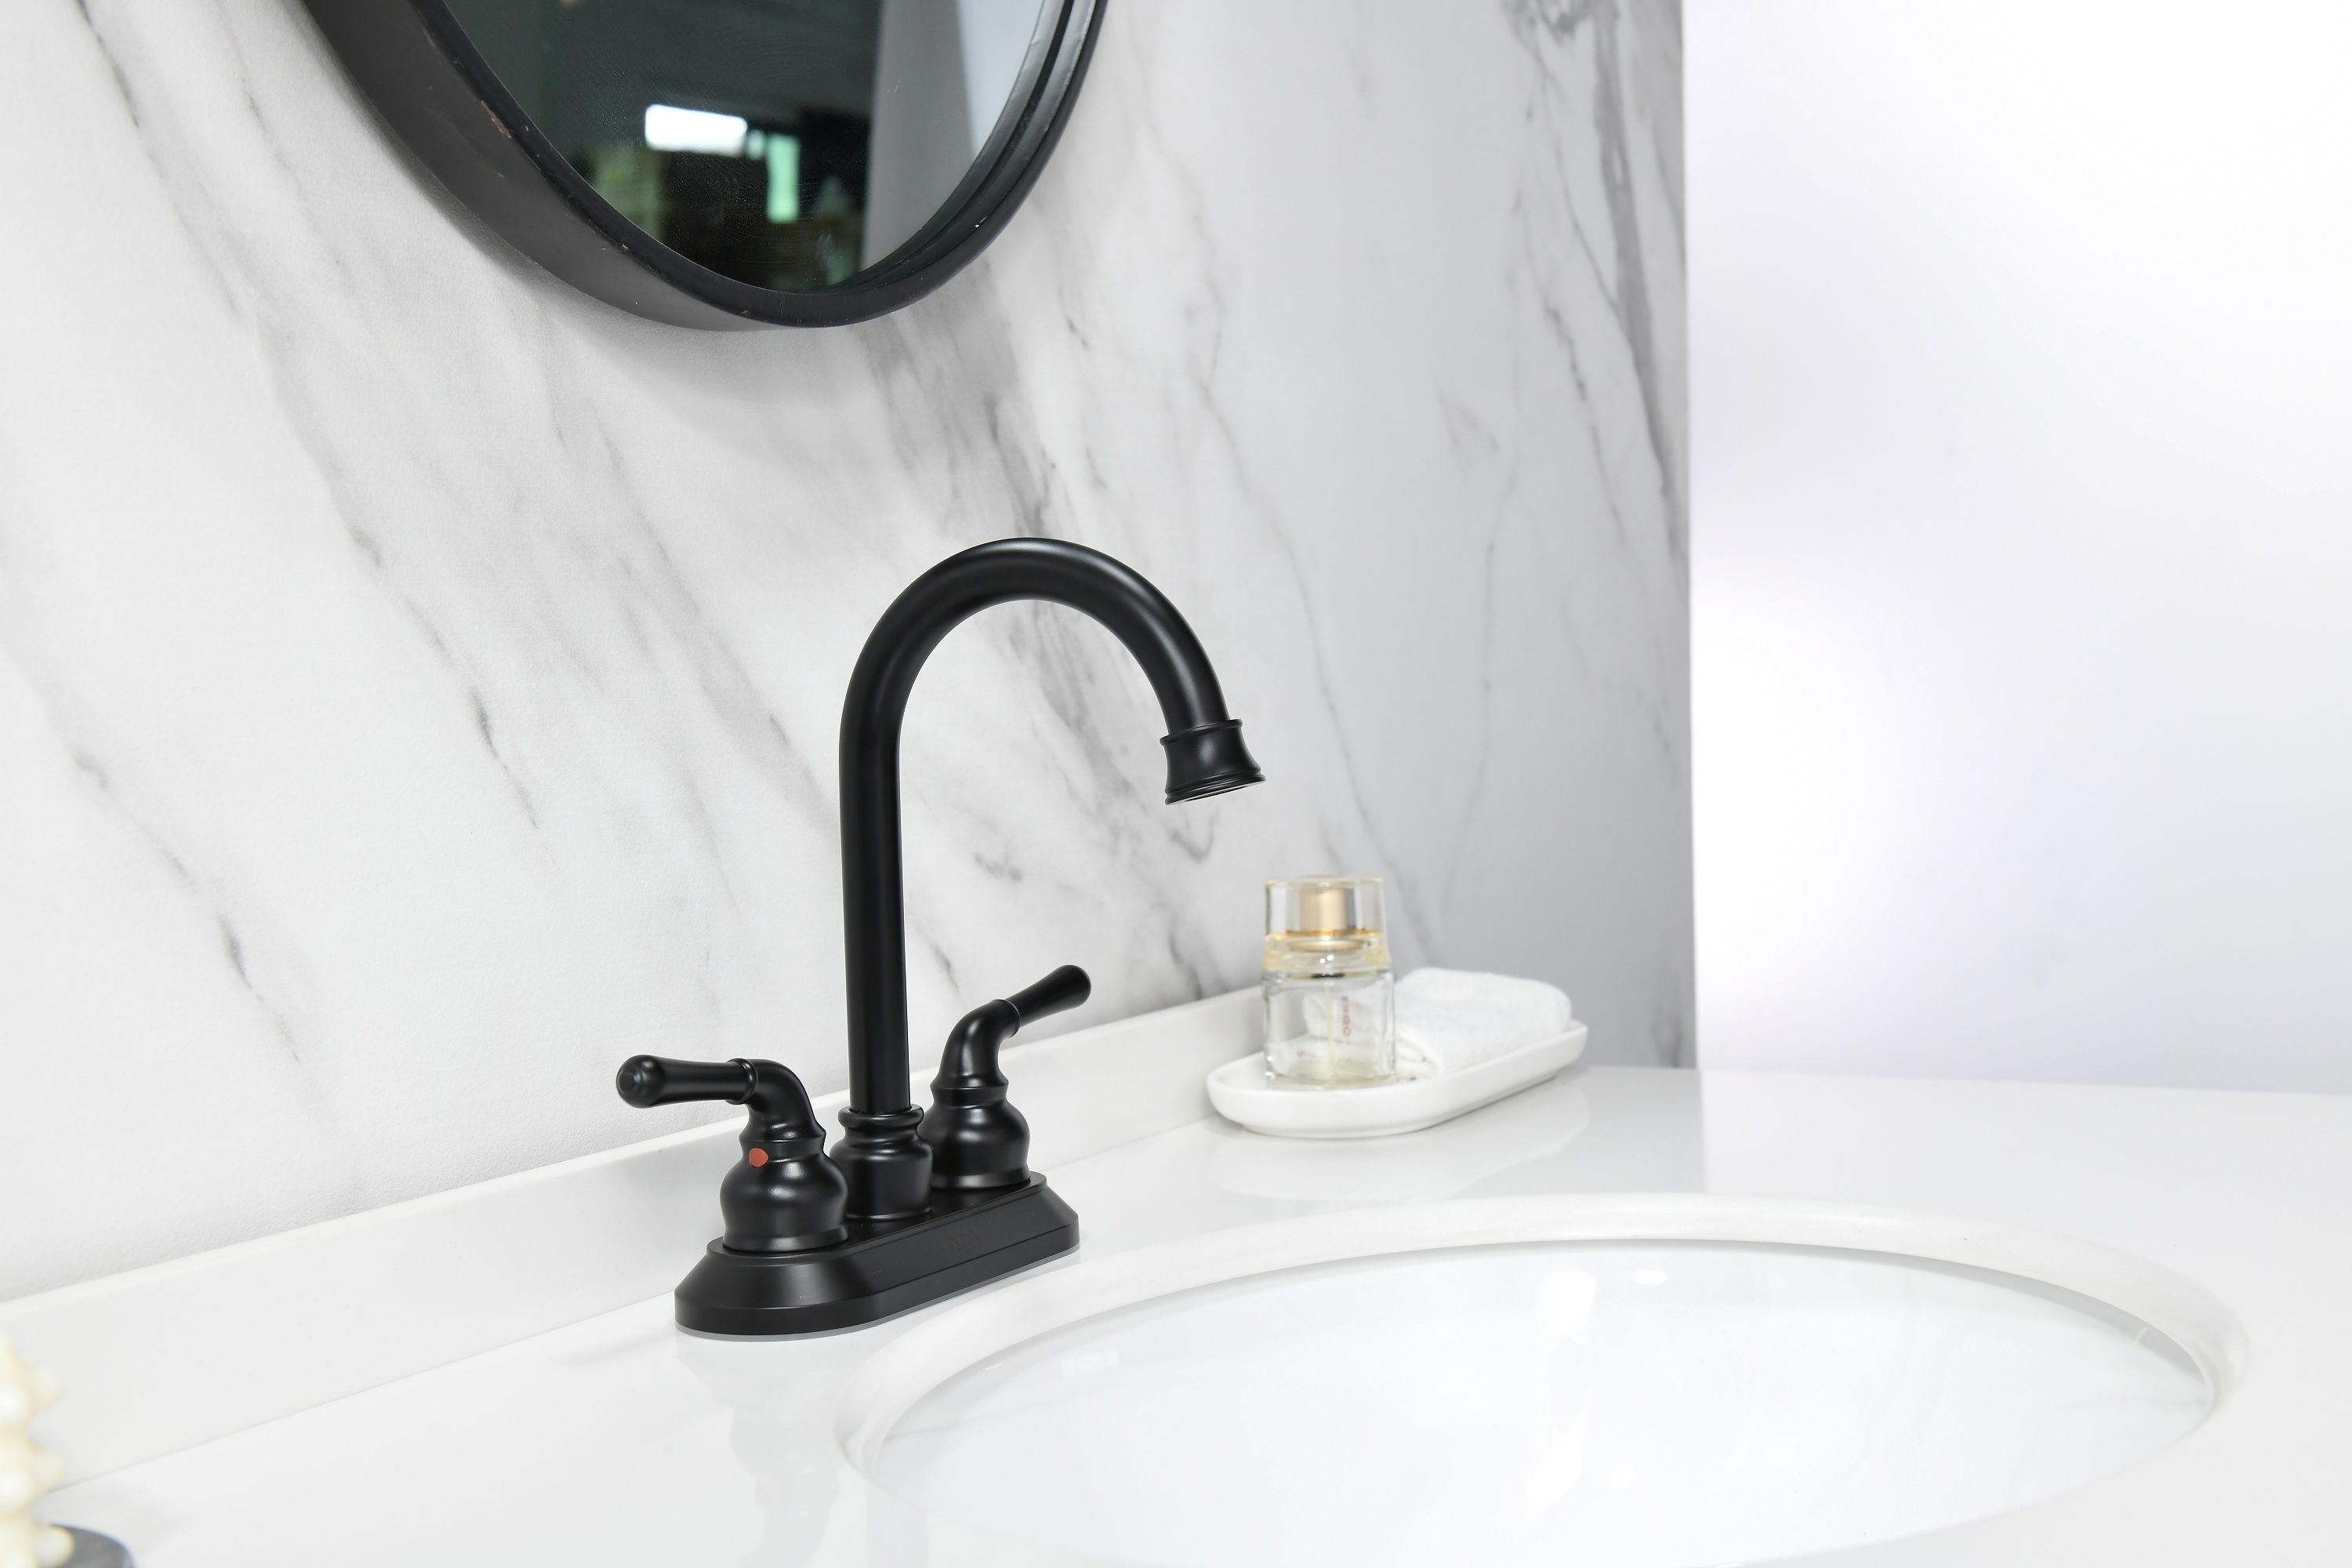 Black Vanity Faucet Bathroom Bathtub Faucets With 2 Handles Hot Cold Matt Bathroom Basin Faucet